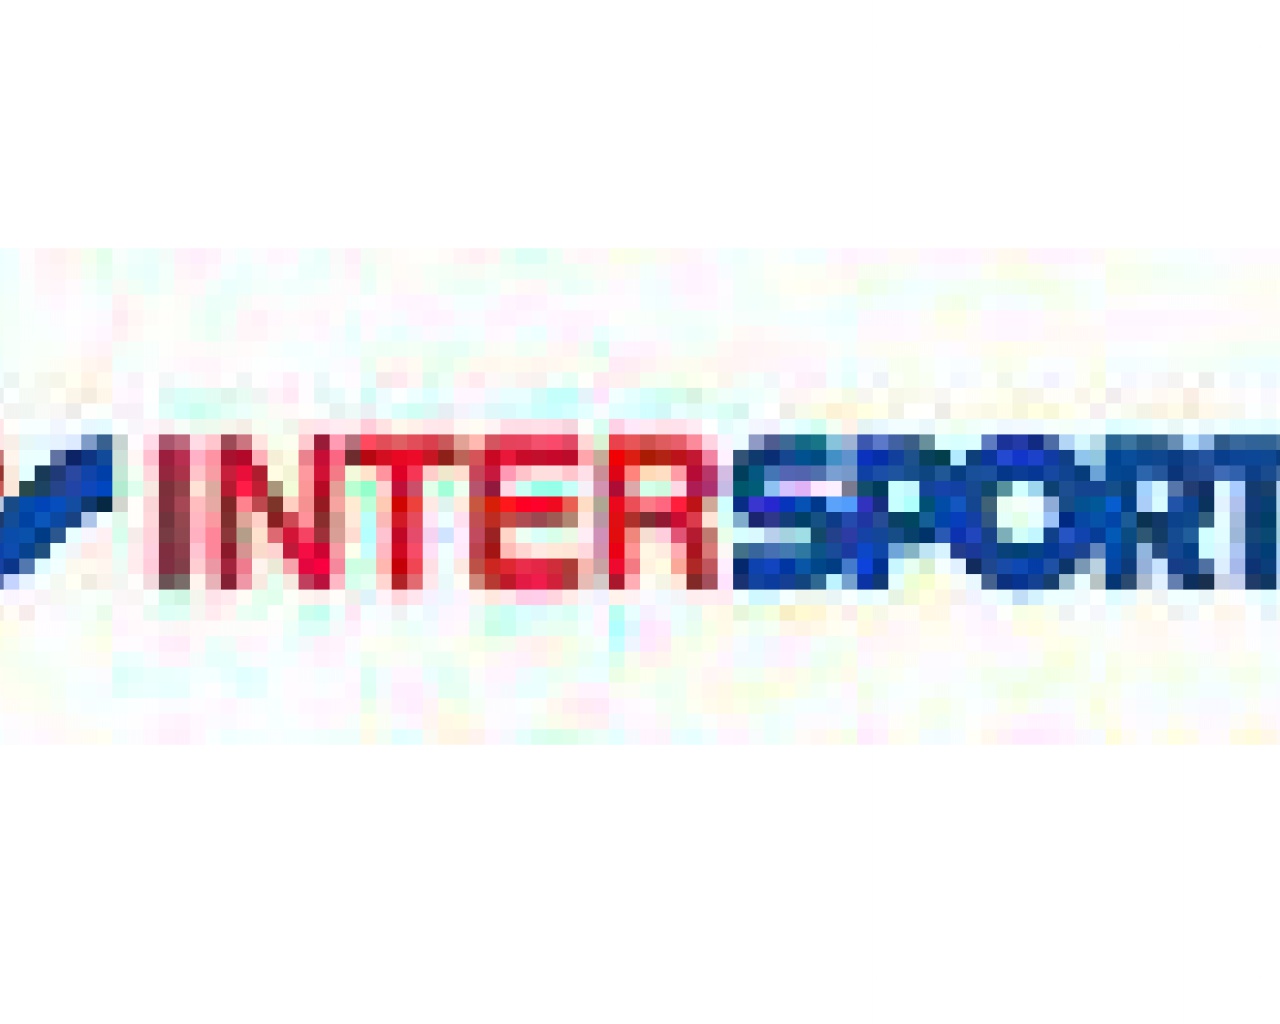 Intersport Limoges